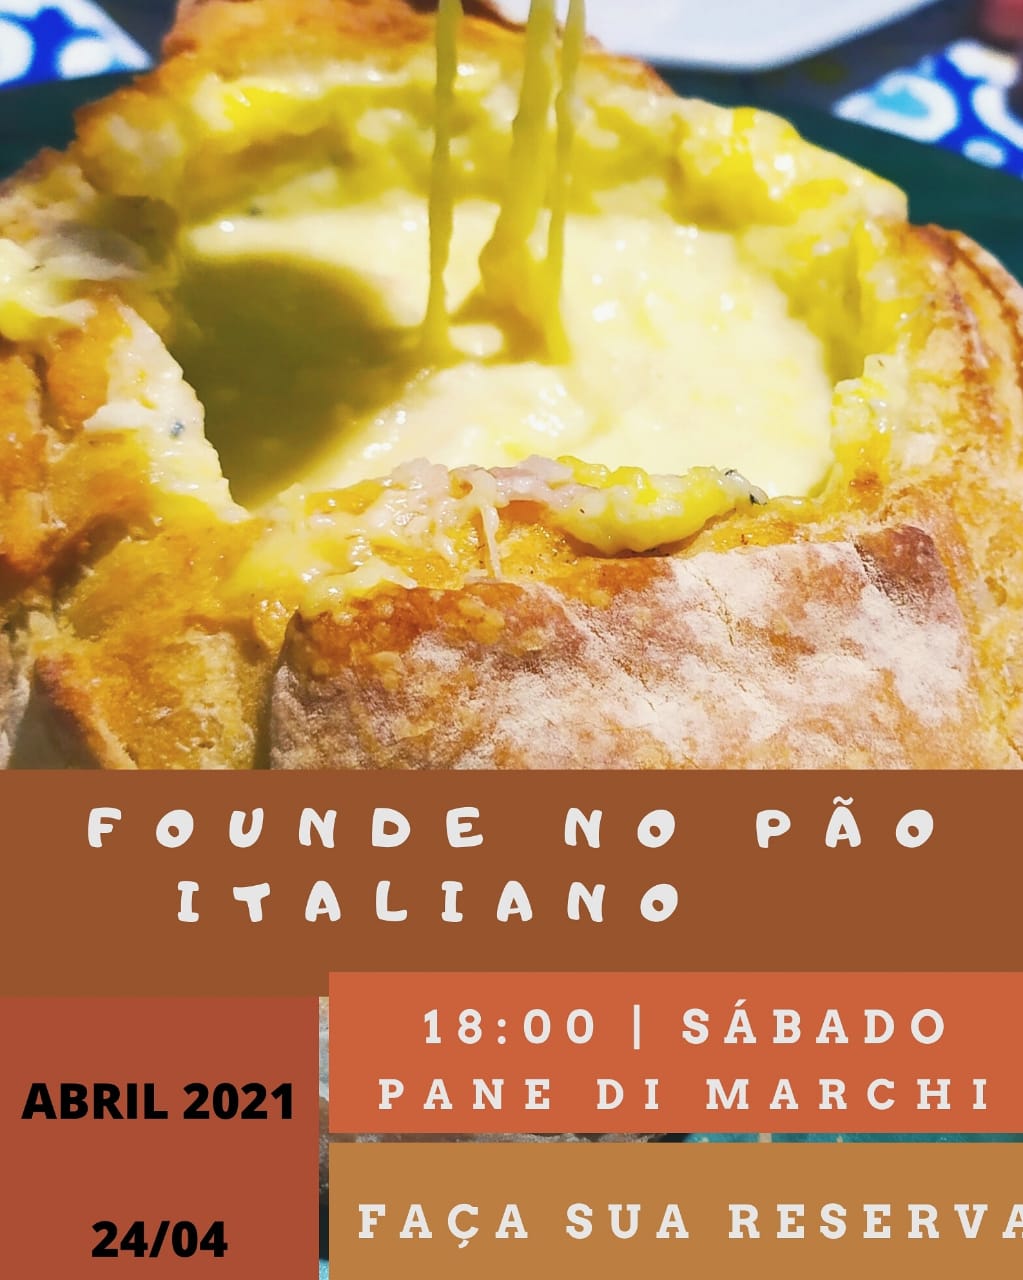 Pane Di Marchi tem gorgonzola com nozes, brioches e baguetes, para a sexta-feira